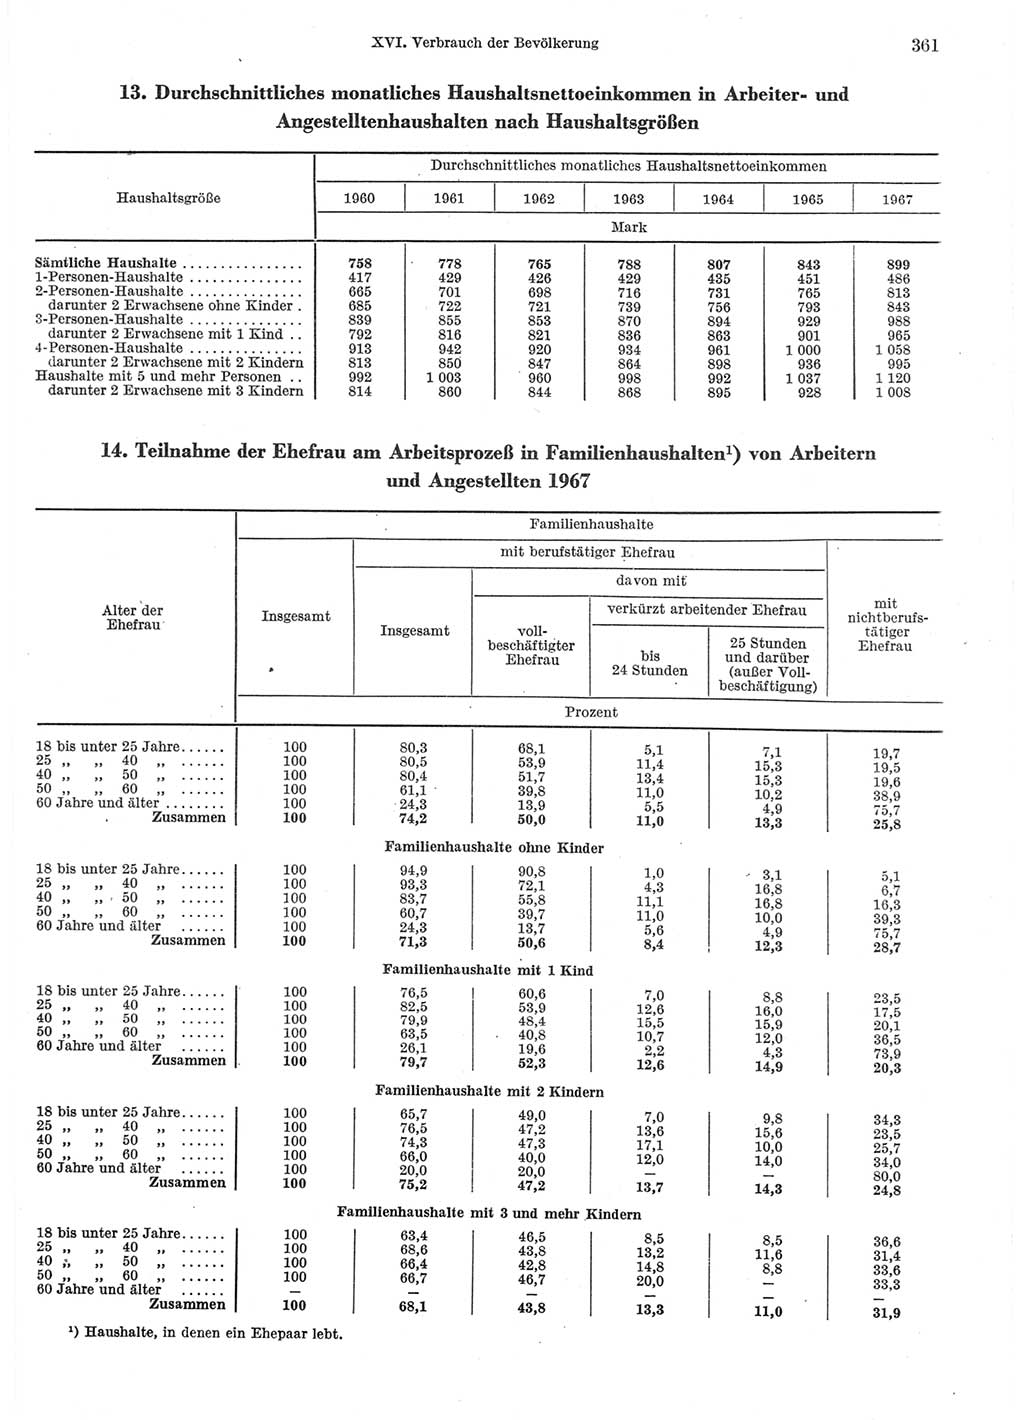 Statistisches Jahrbuch der Deutschen Demokratischen Republik (DDR) 1970, Seite 361 (Stat. Jb. DDR 1970, S. 361)